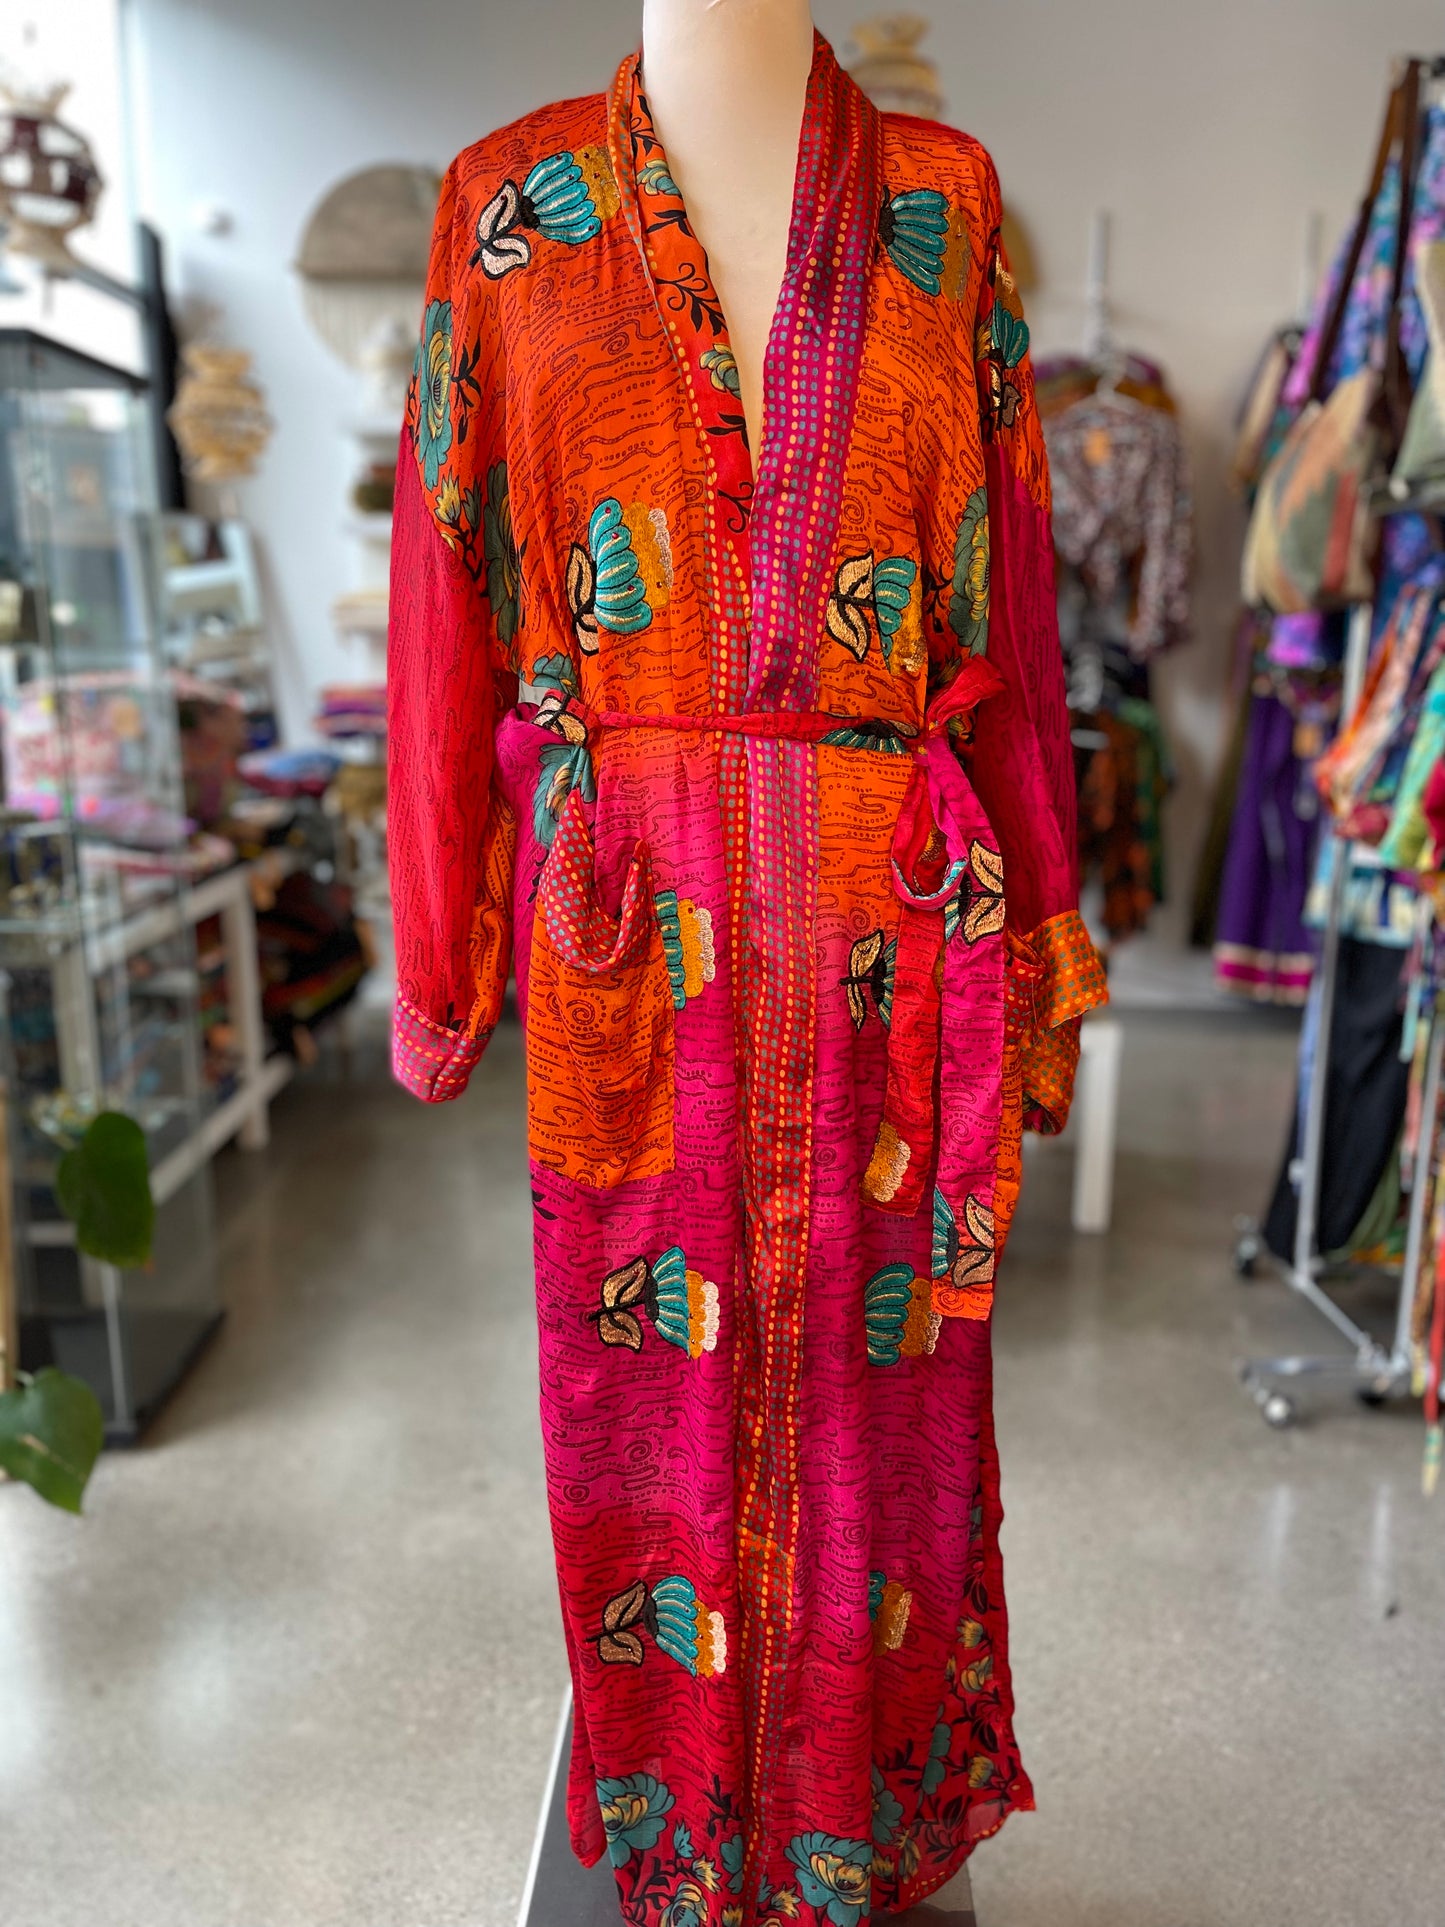 Orange/Pink Embroidered Silk Robe